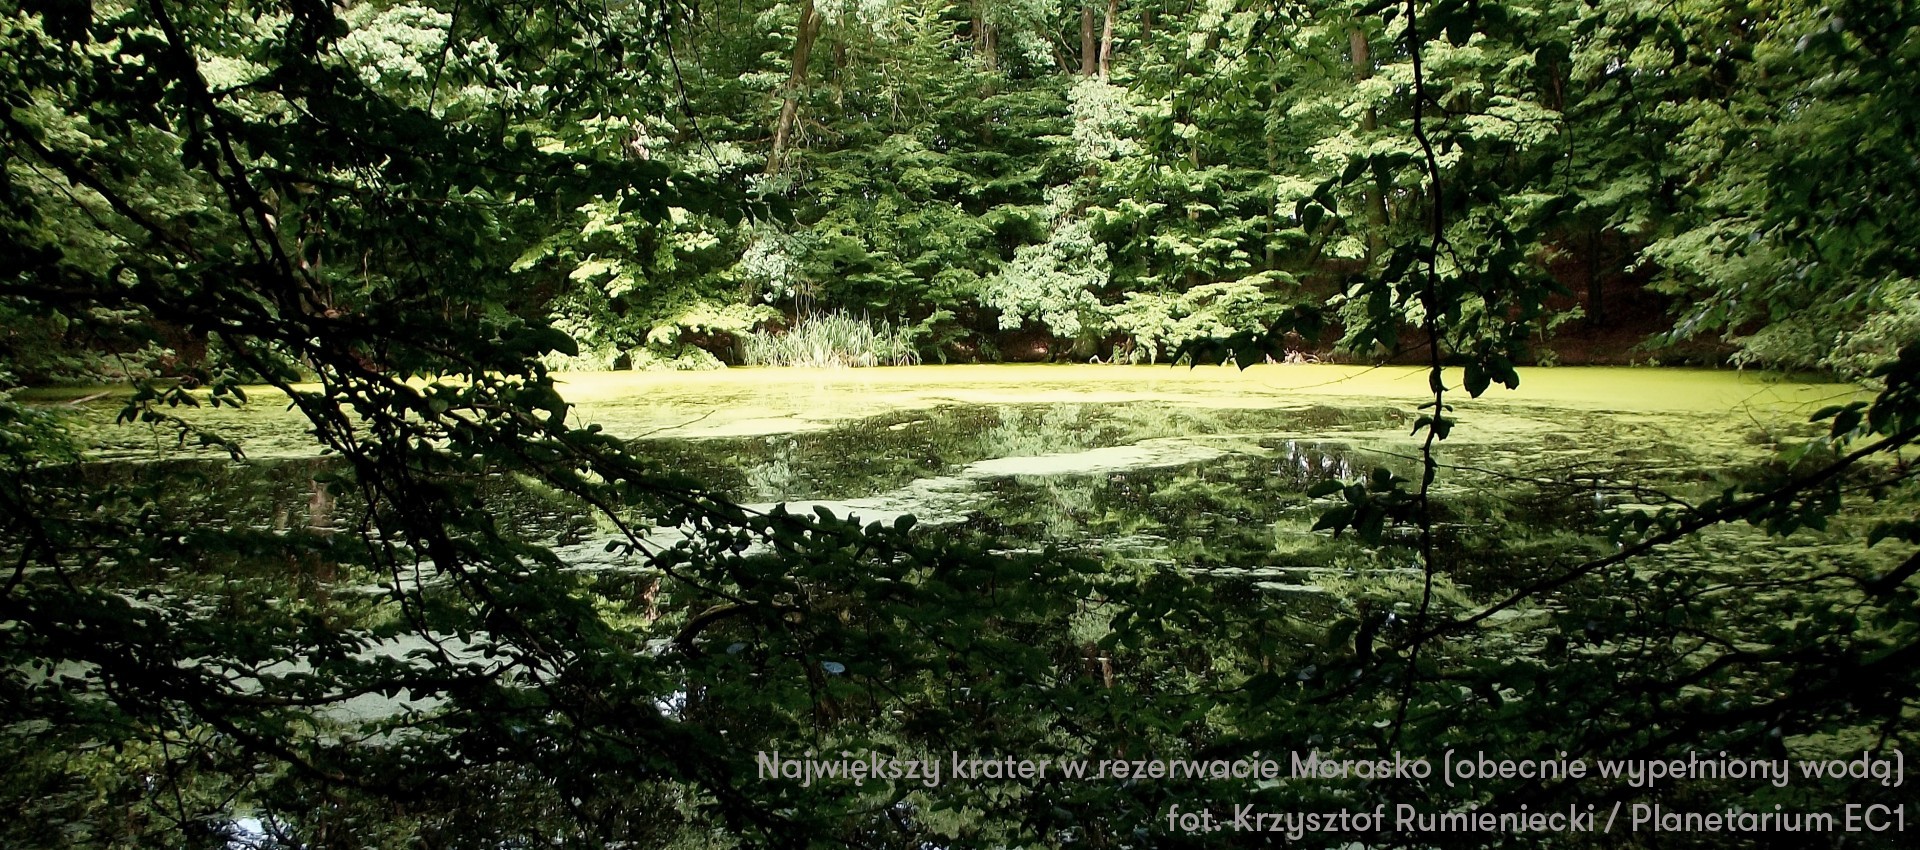 Największy krater w rezerwacie Morasko, obecnie wypełniony wodą.